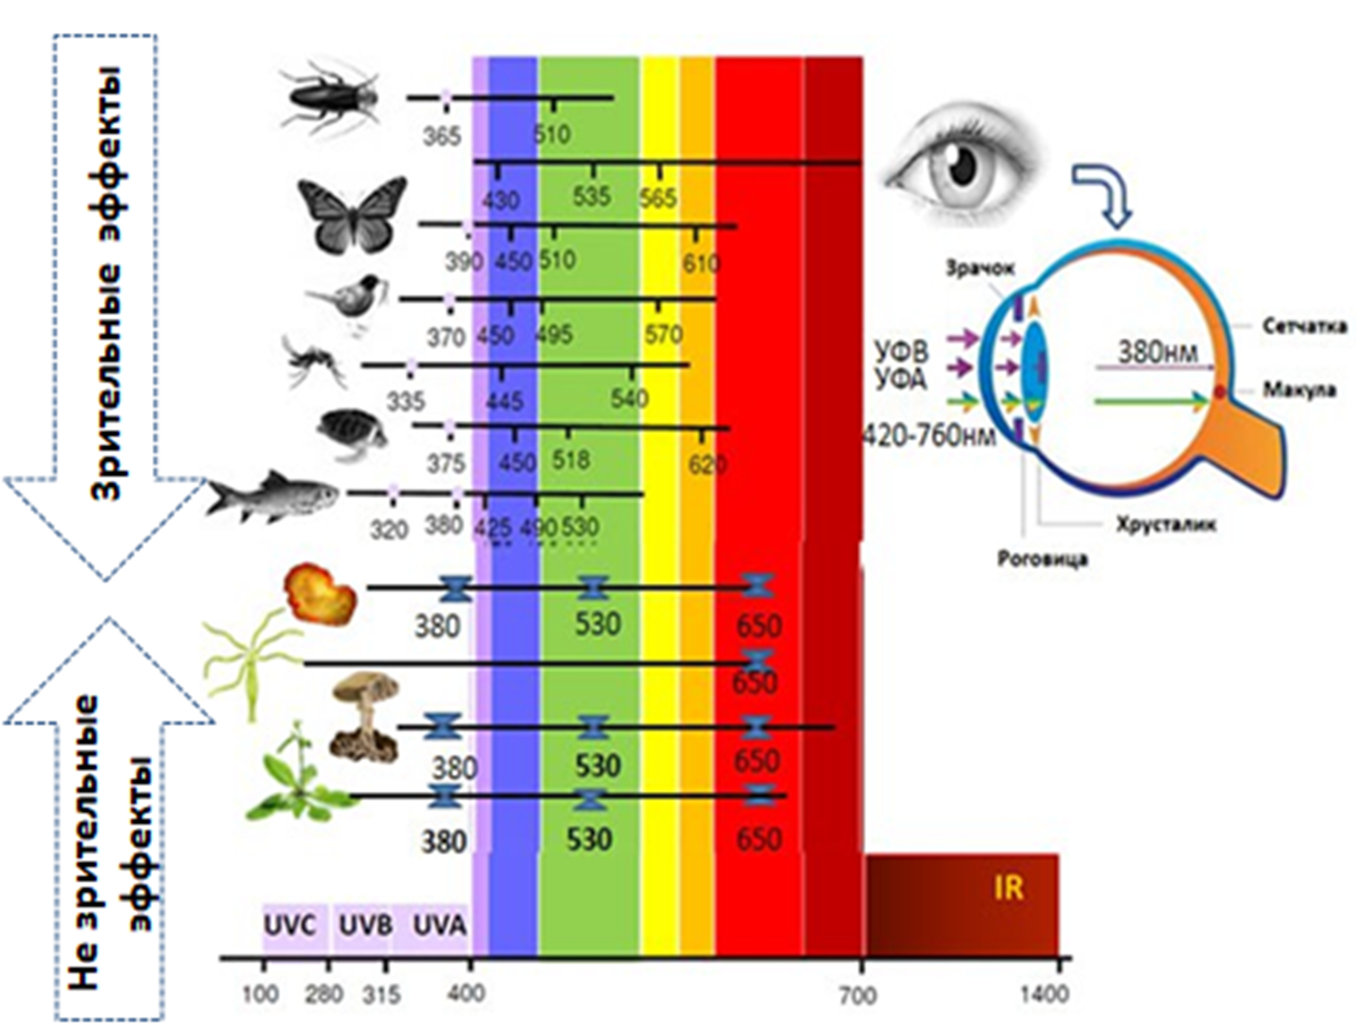 Светочувствительность различных организмов и схема глаза человека